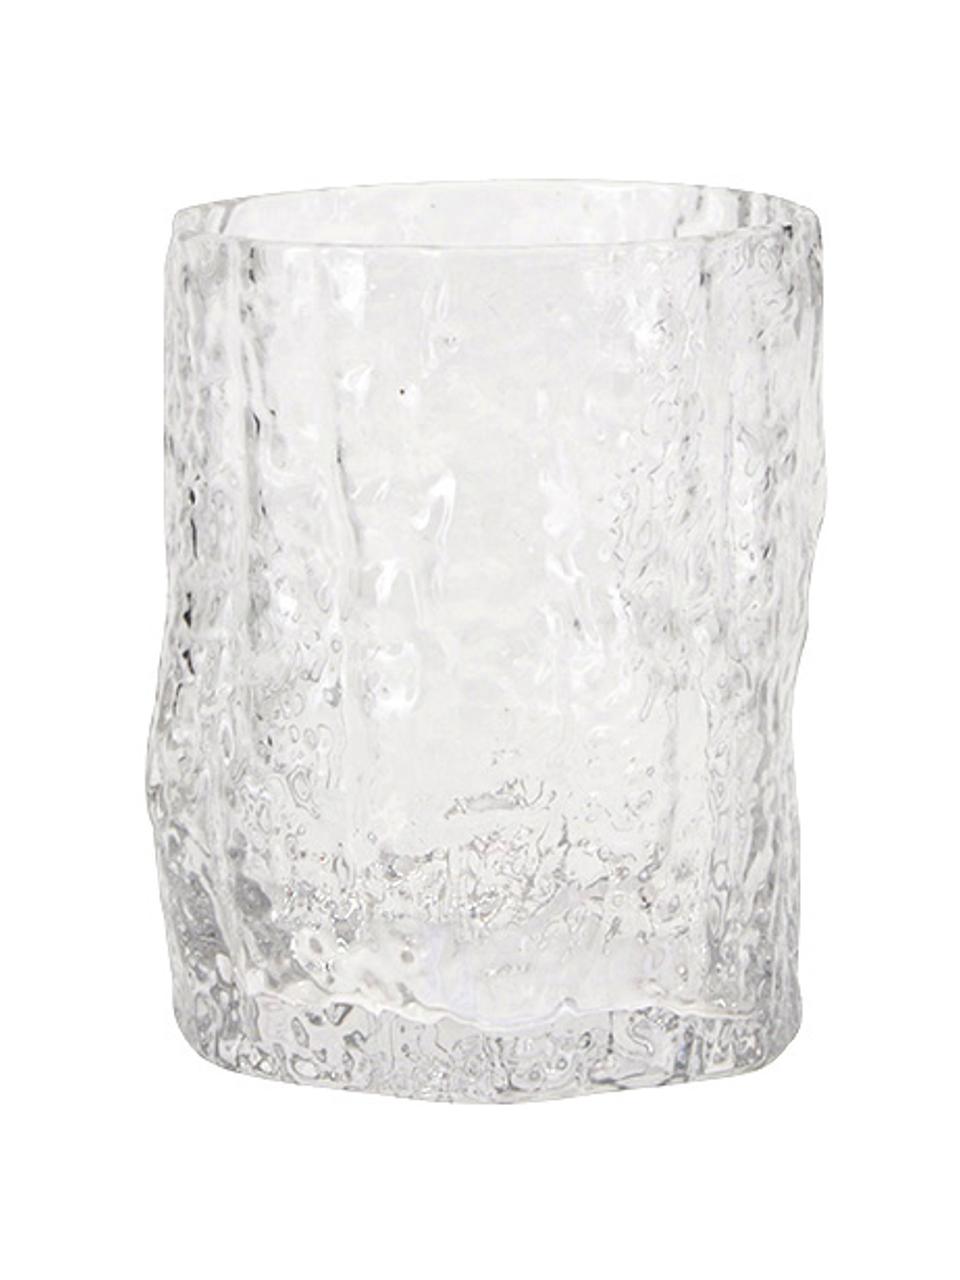 Wassergläser Coco in organischer Form, 6 Stück, Glas, Transparent, Ø 7 x H 9 cm, 330 ml